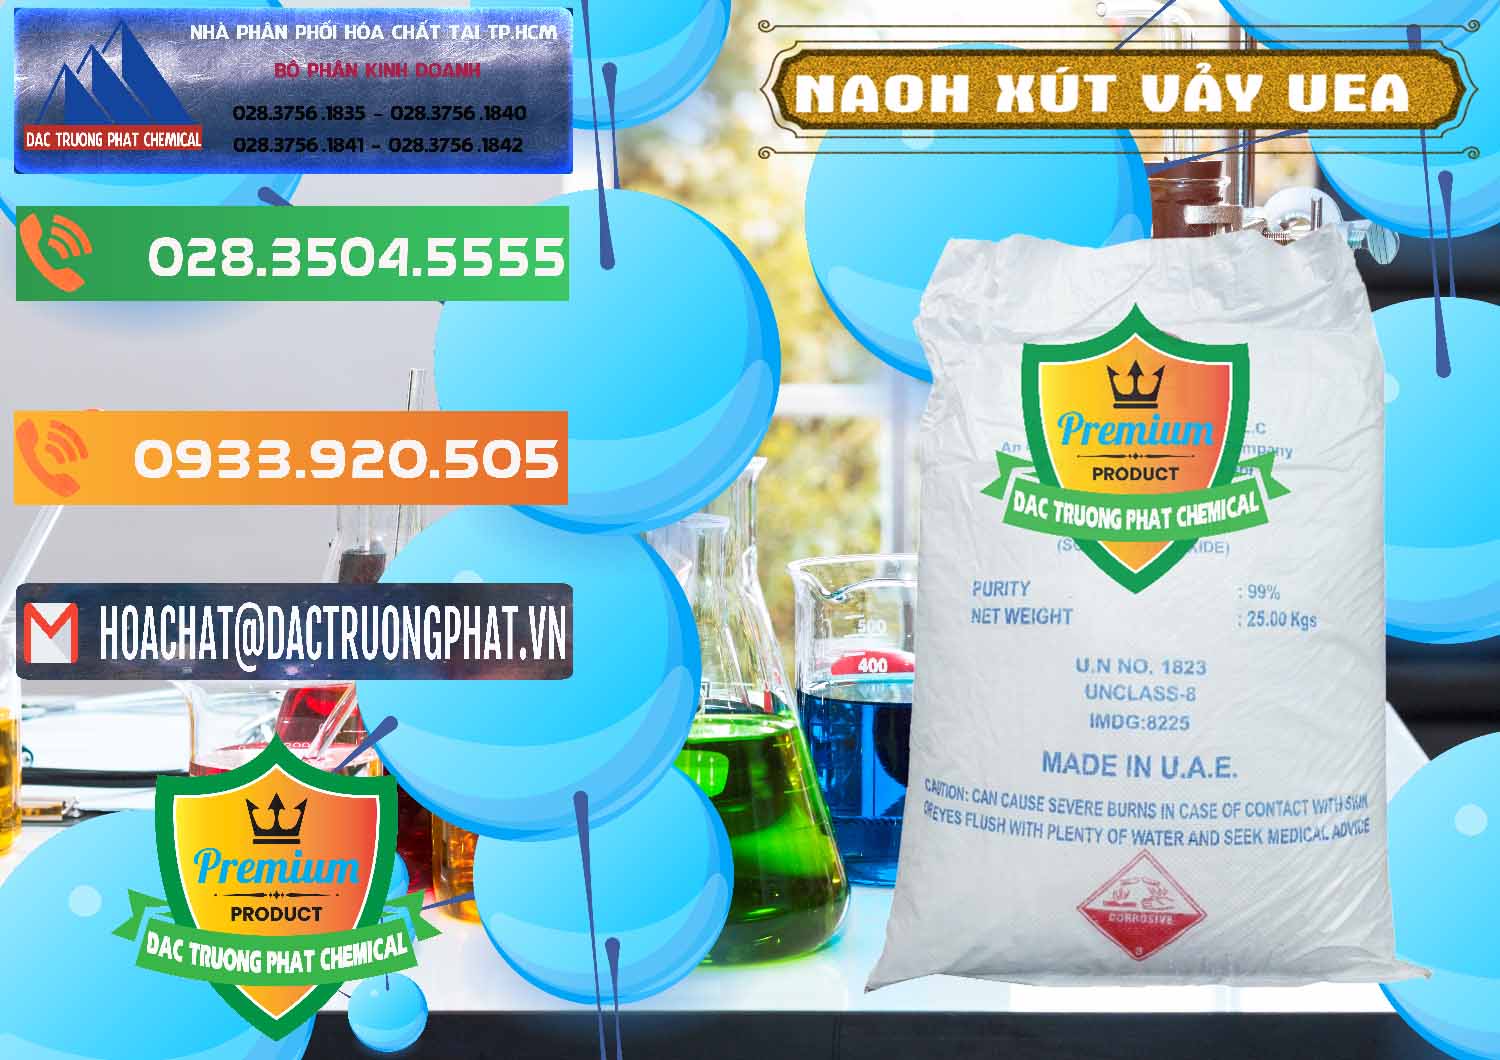 Cty chuyên bán & cung cấp Xút Vảy - NaOH Vảy UAE Iran - 0432 - Công ty chuyên phân phối _ cung ứng hóa chất tại TP.HCM - hoachatxulynuoc.com.vn